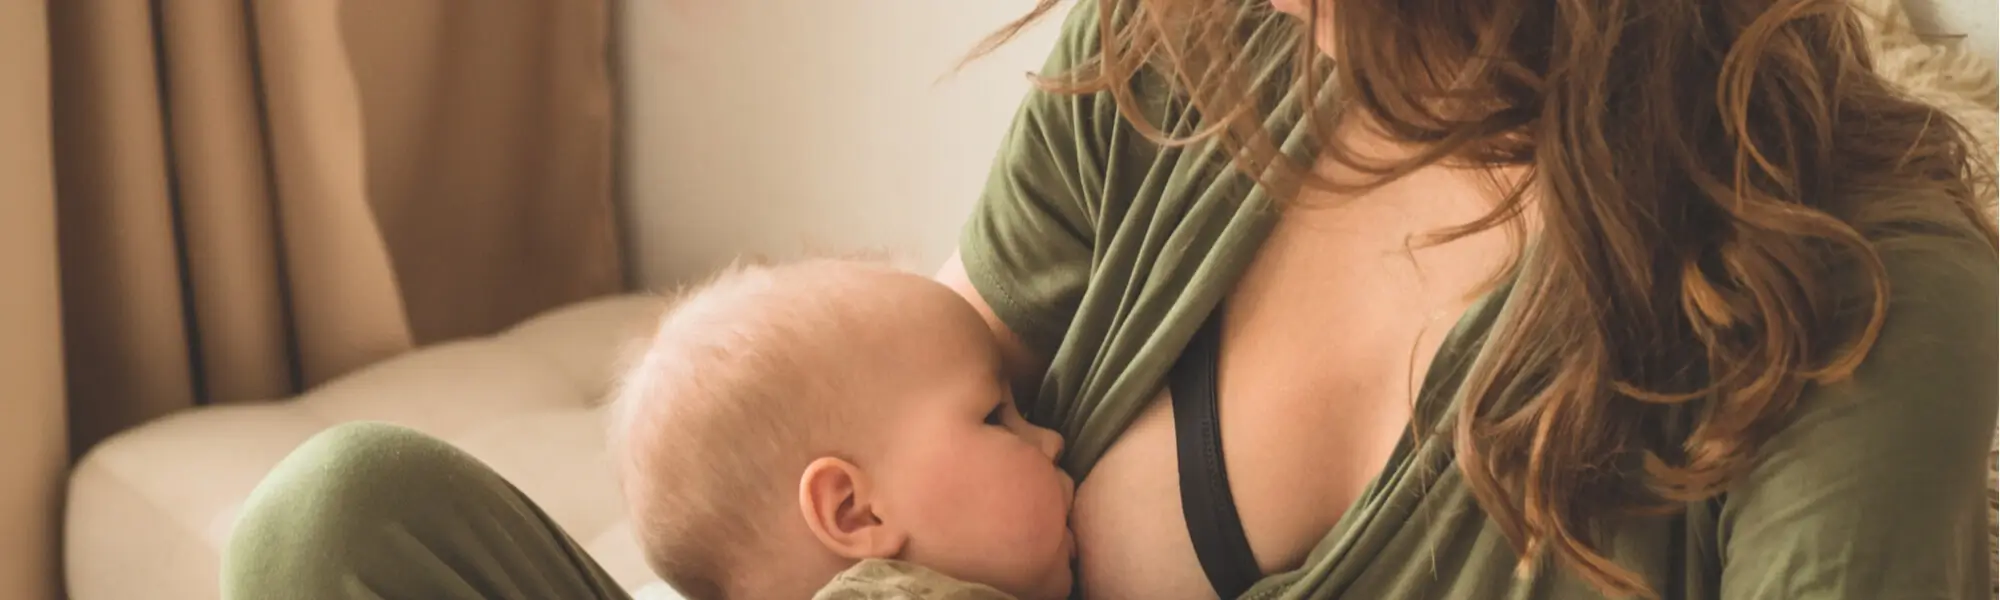 Karmienie piersią - korzyści dla matki i dziecka, wskazówki, najczęściej zadawane pytania